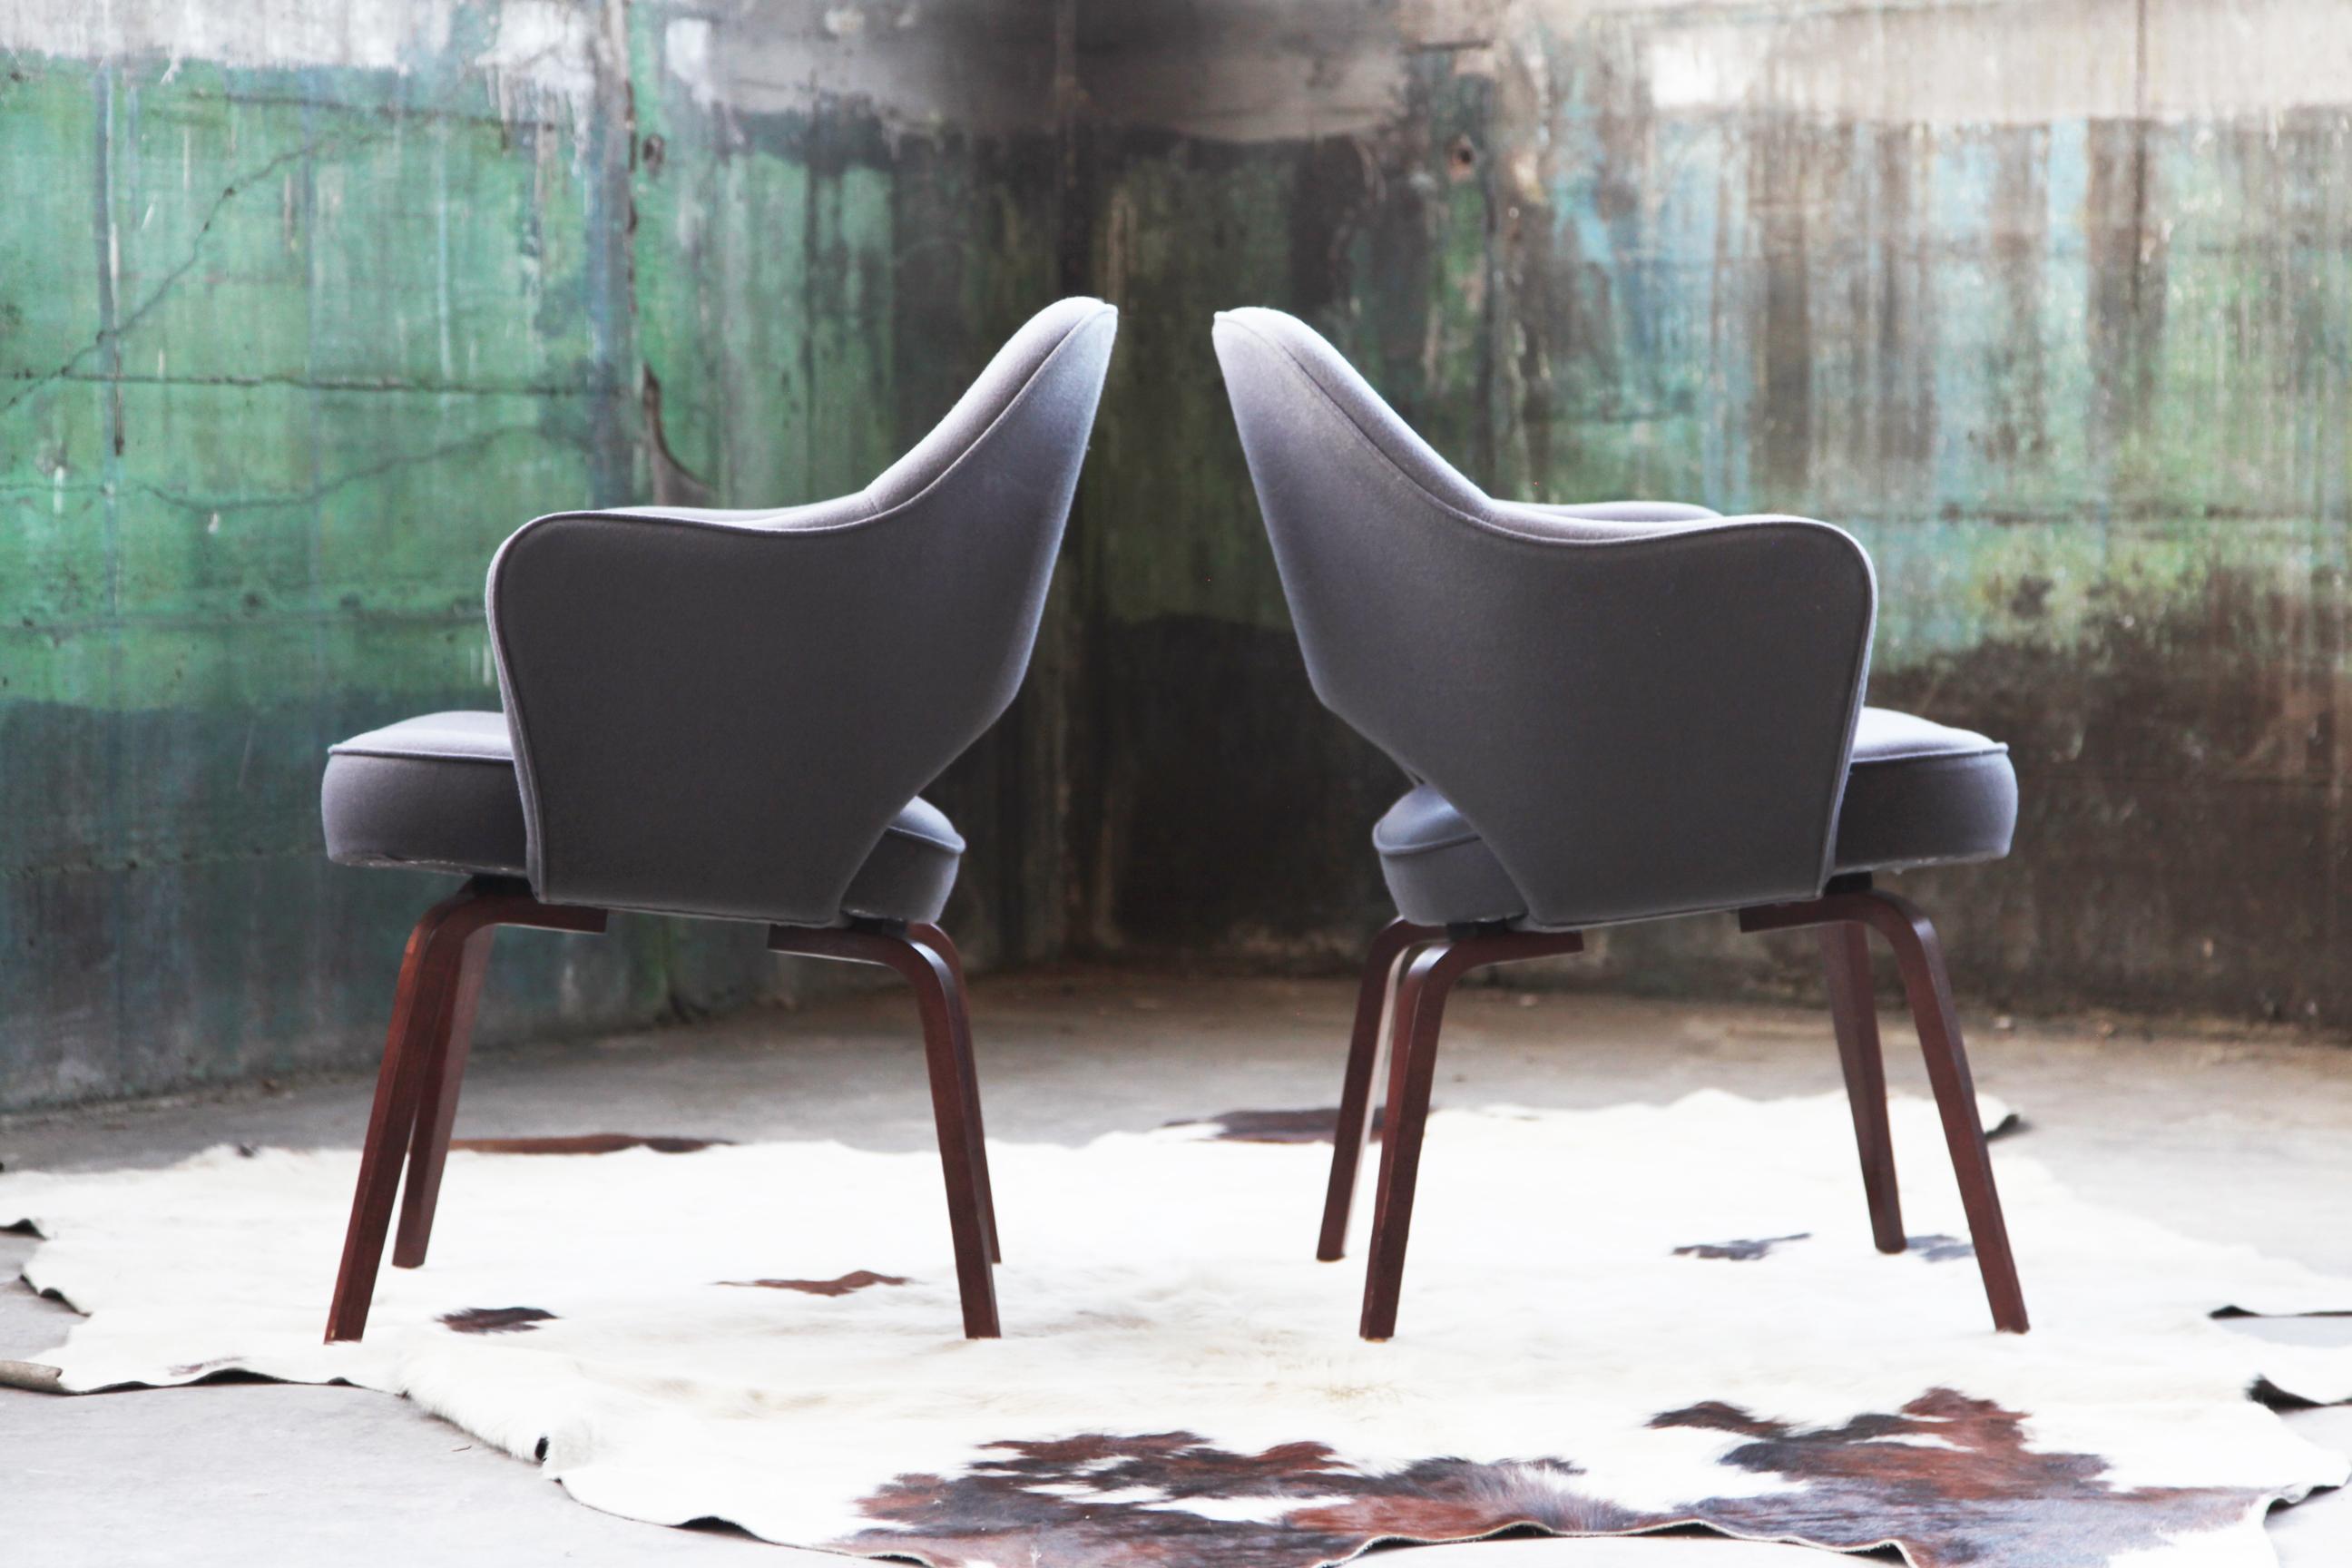 Ein Stuhl übrig, der hier als Einzelstück verkauft wird. Durchgehend ausgezeichneter Zustand. 

Ein Saarinen Chefsessel mit Holzgestell, gepolstert mit einem herrlichen grauen Wollmischgewebe. Dieser Stuhl ist komplett original und in